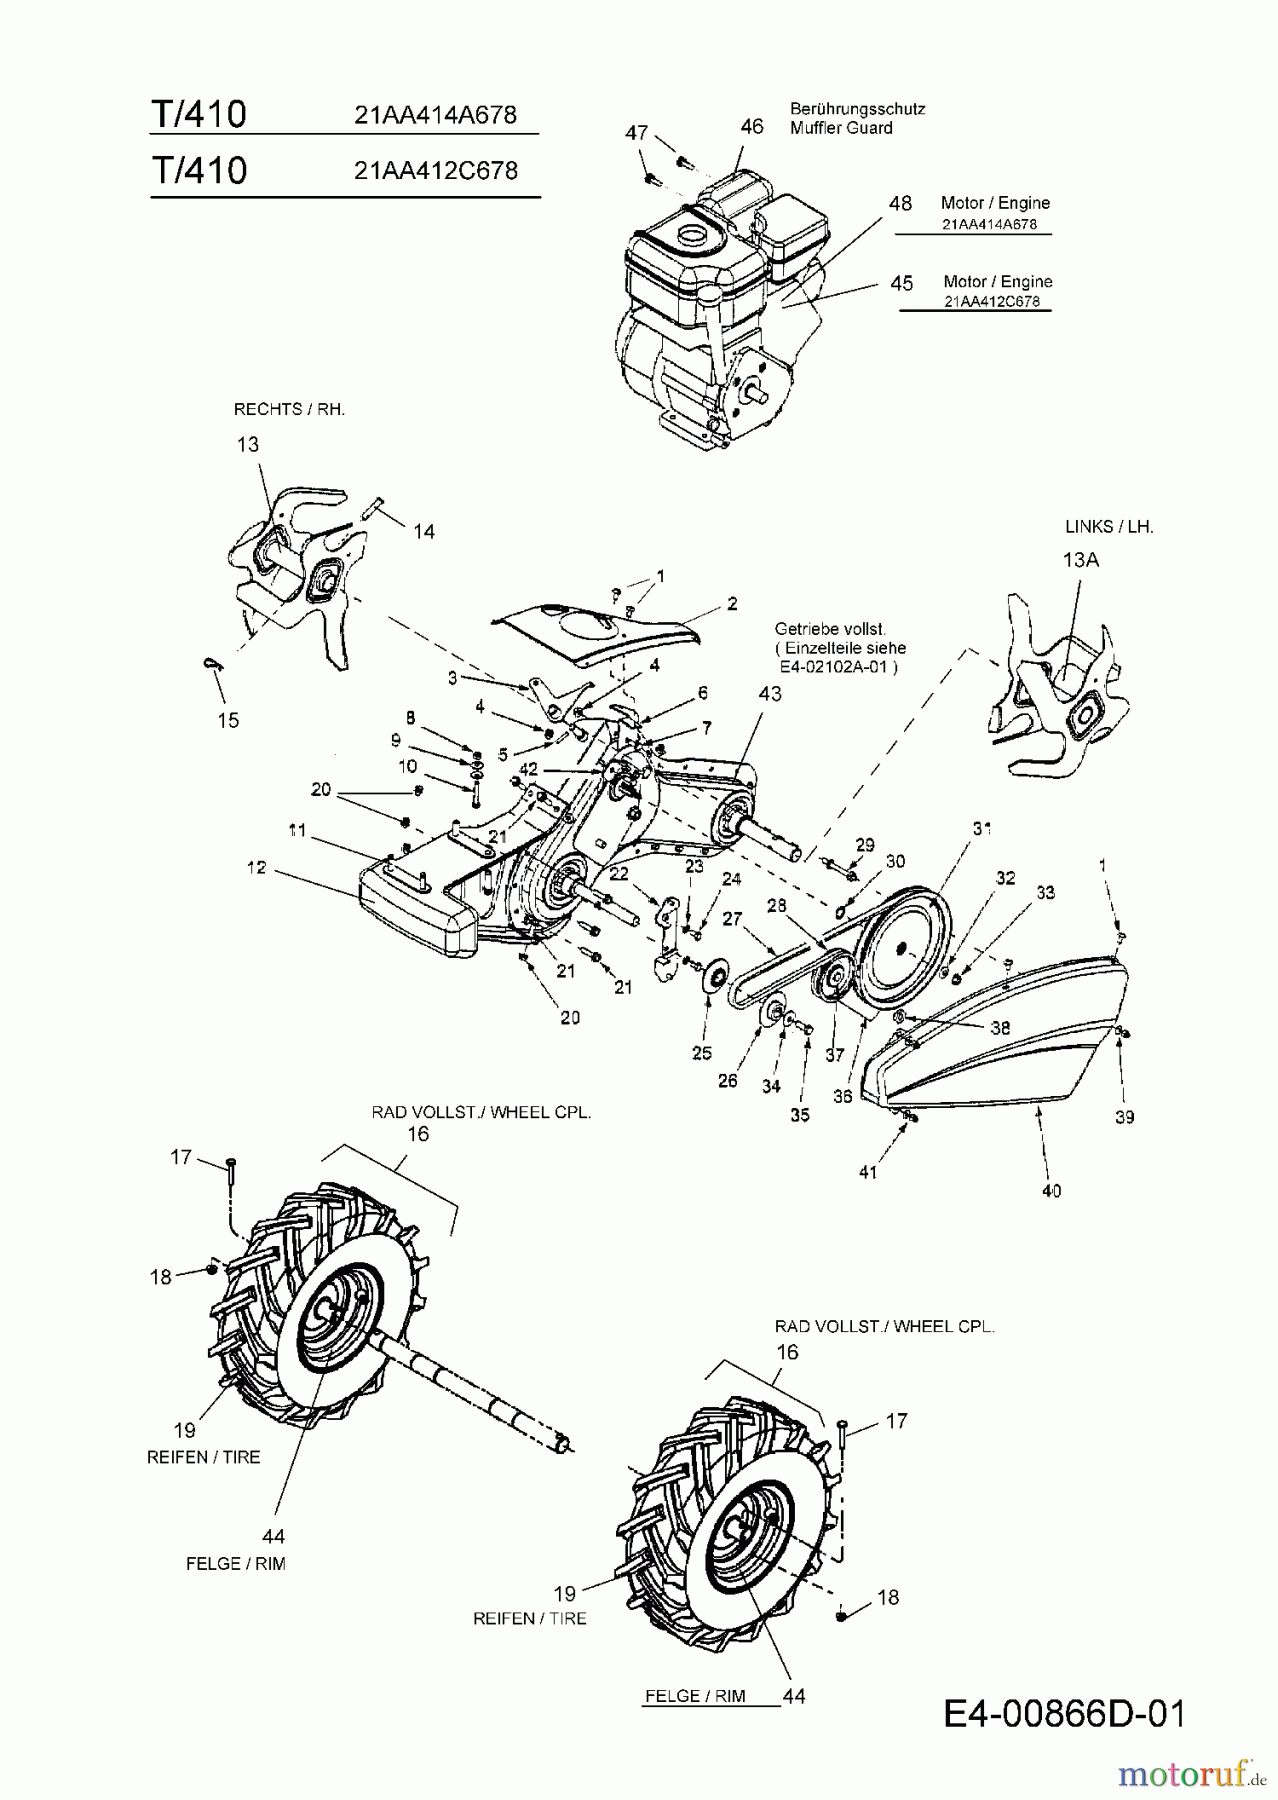  MTD Motorhacken T/410 21AA414A678  (2007) Getriebe, Räder, Hacksterne